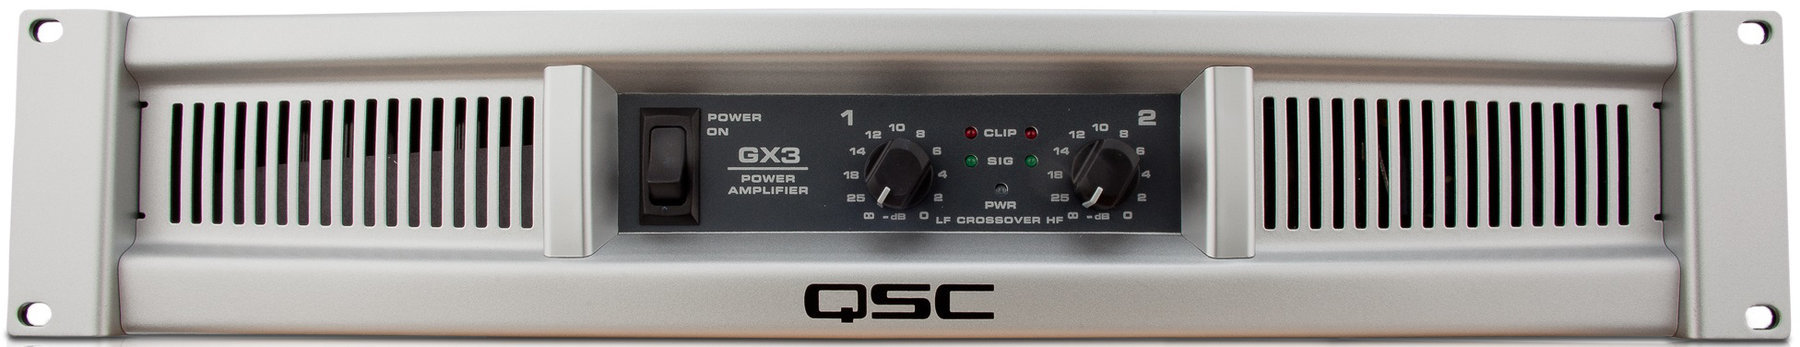 Amplificateurs de puissance QSC GX3 Amplificateurs de puissance